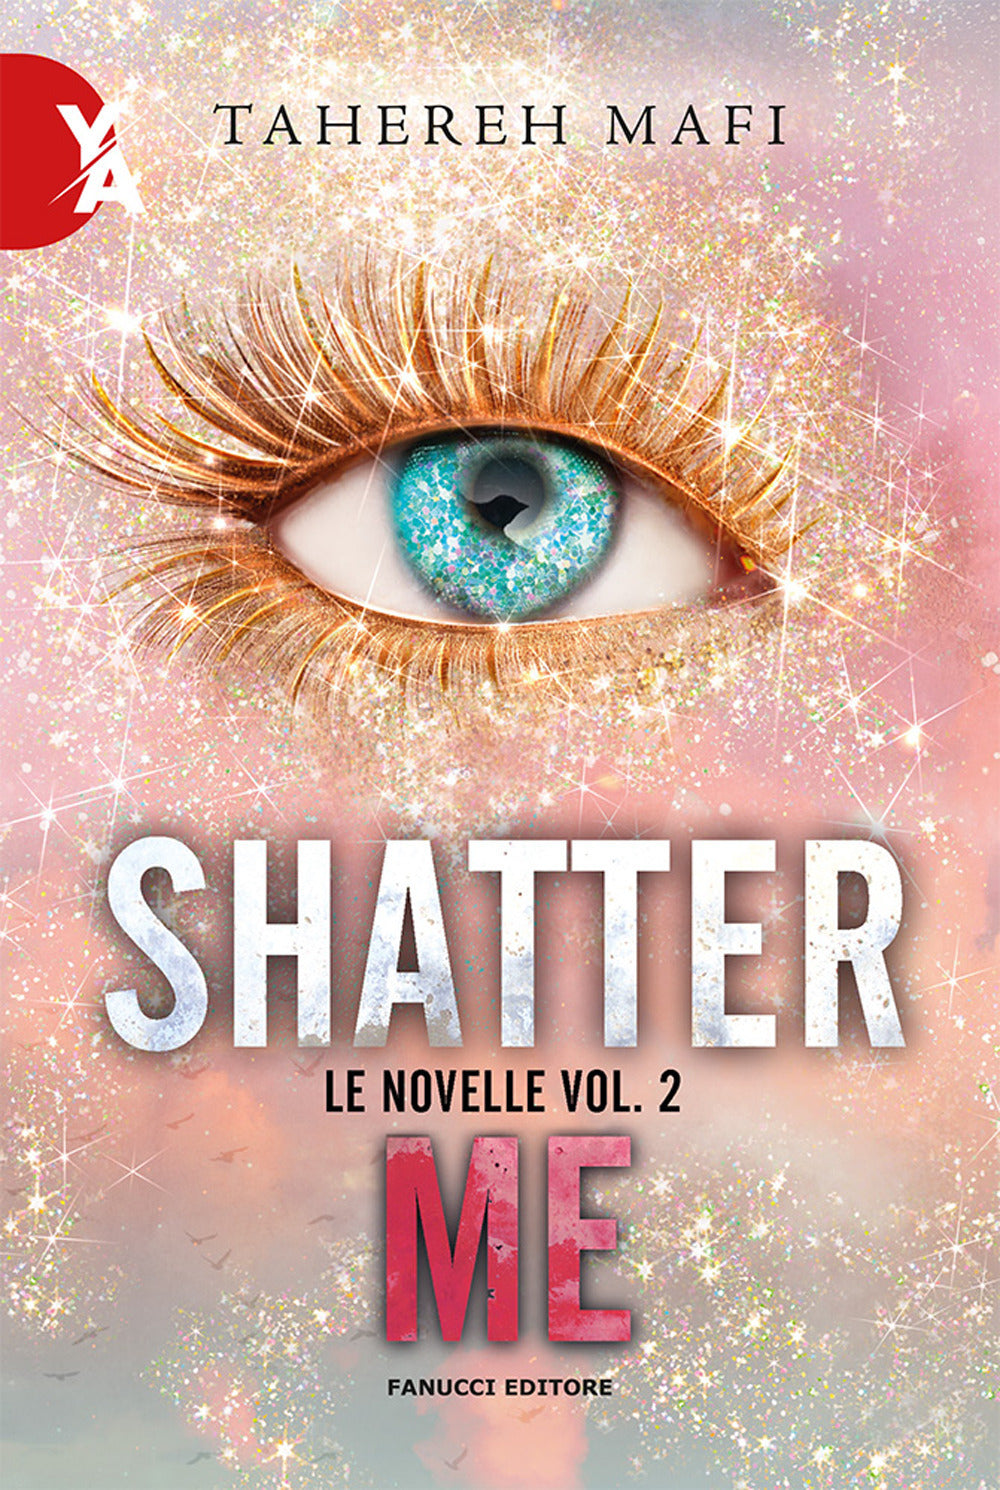 Le novelle. Shatter me. Vol. 2.